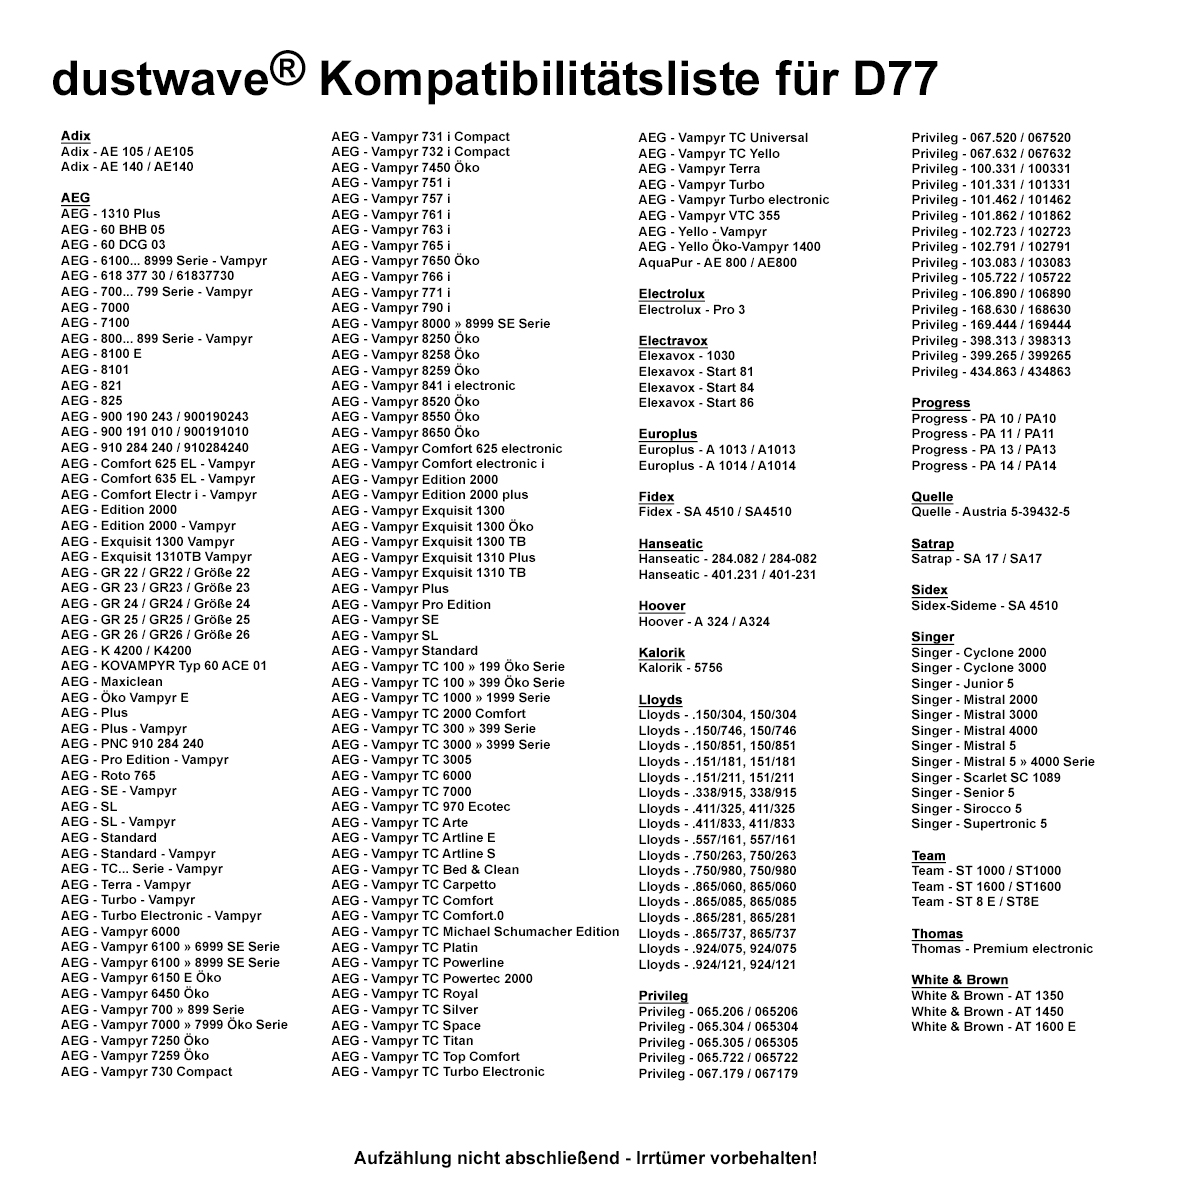 Dustwave® 20 Staubsaugerbeutel für AEG Vampyr 7210 Electronic - hocheffizient, mehrlagiges Mikrovlies mit Hygieneverschluss - Made in Germany